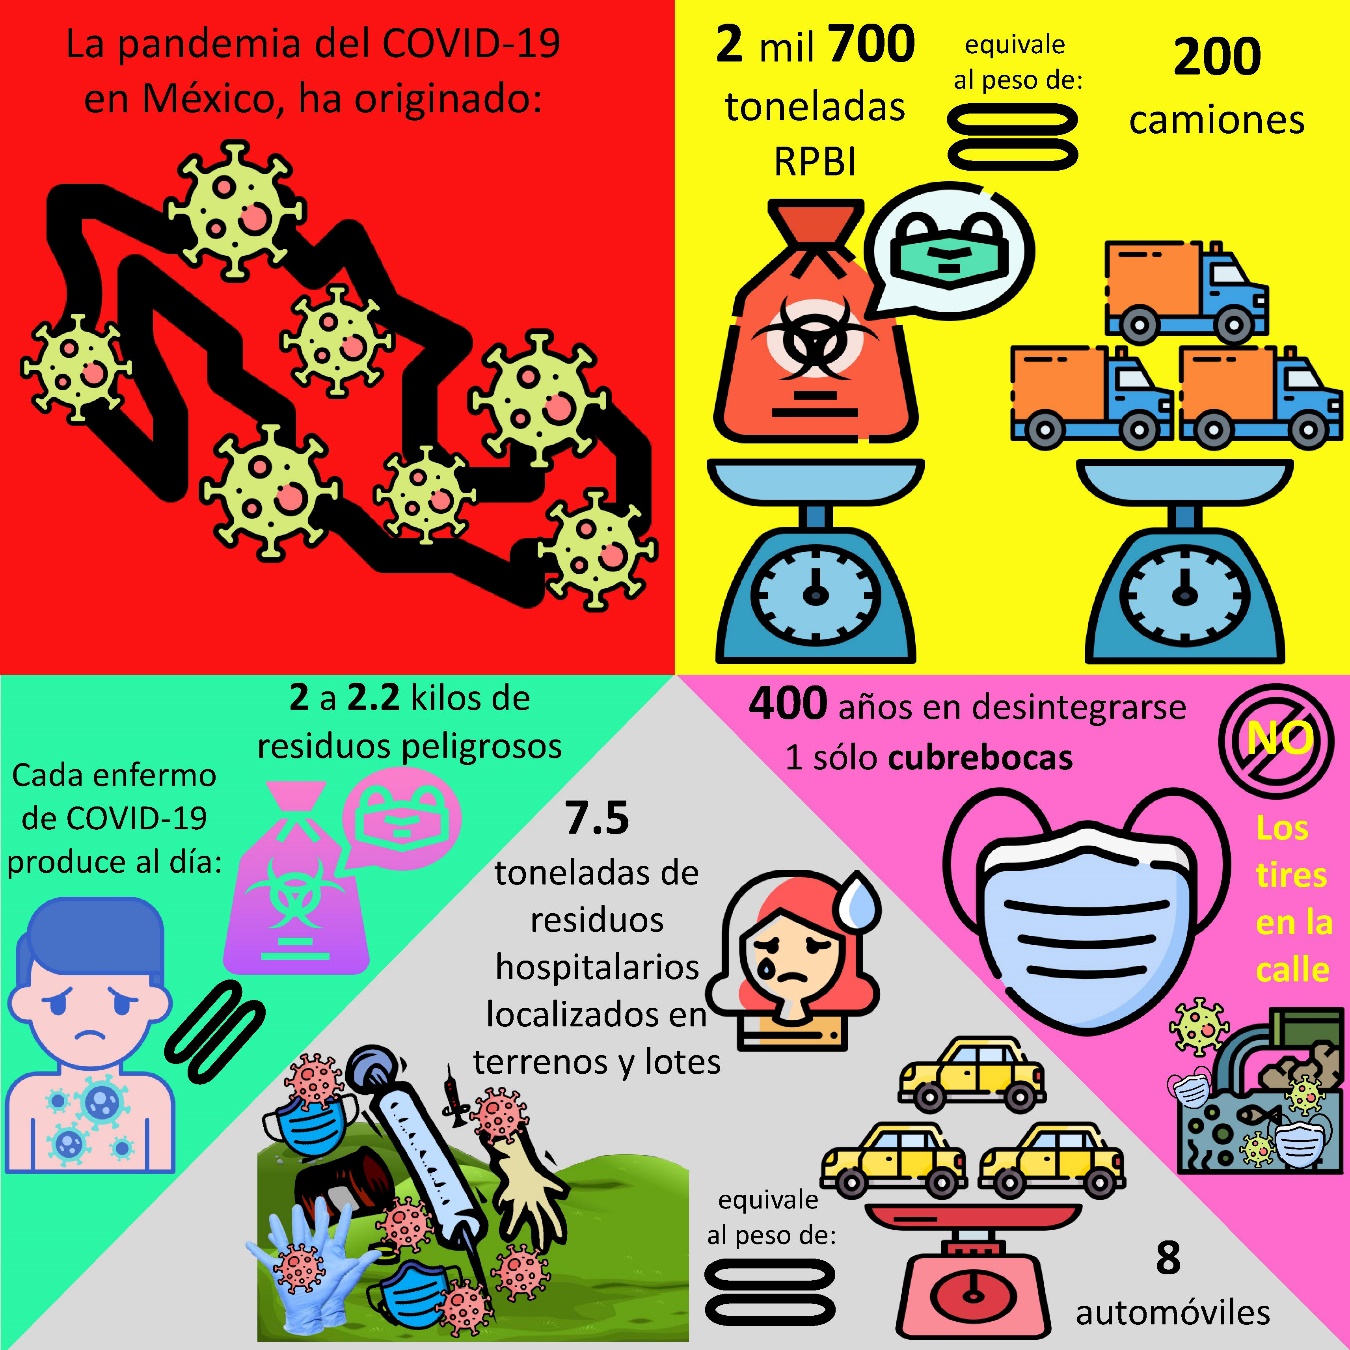 Figura 1. Infografía de los residuos peligrosos generados por COVID-19 en México. Imágenes tomadas de https://www.flaticon.com/